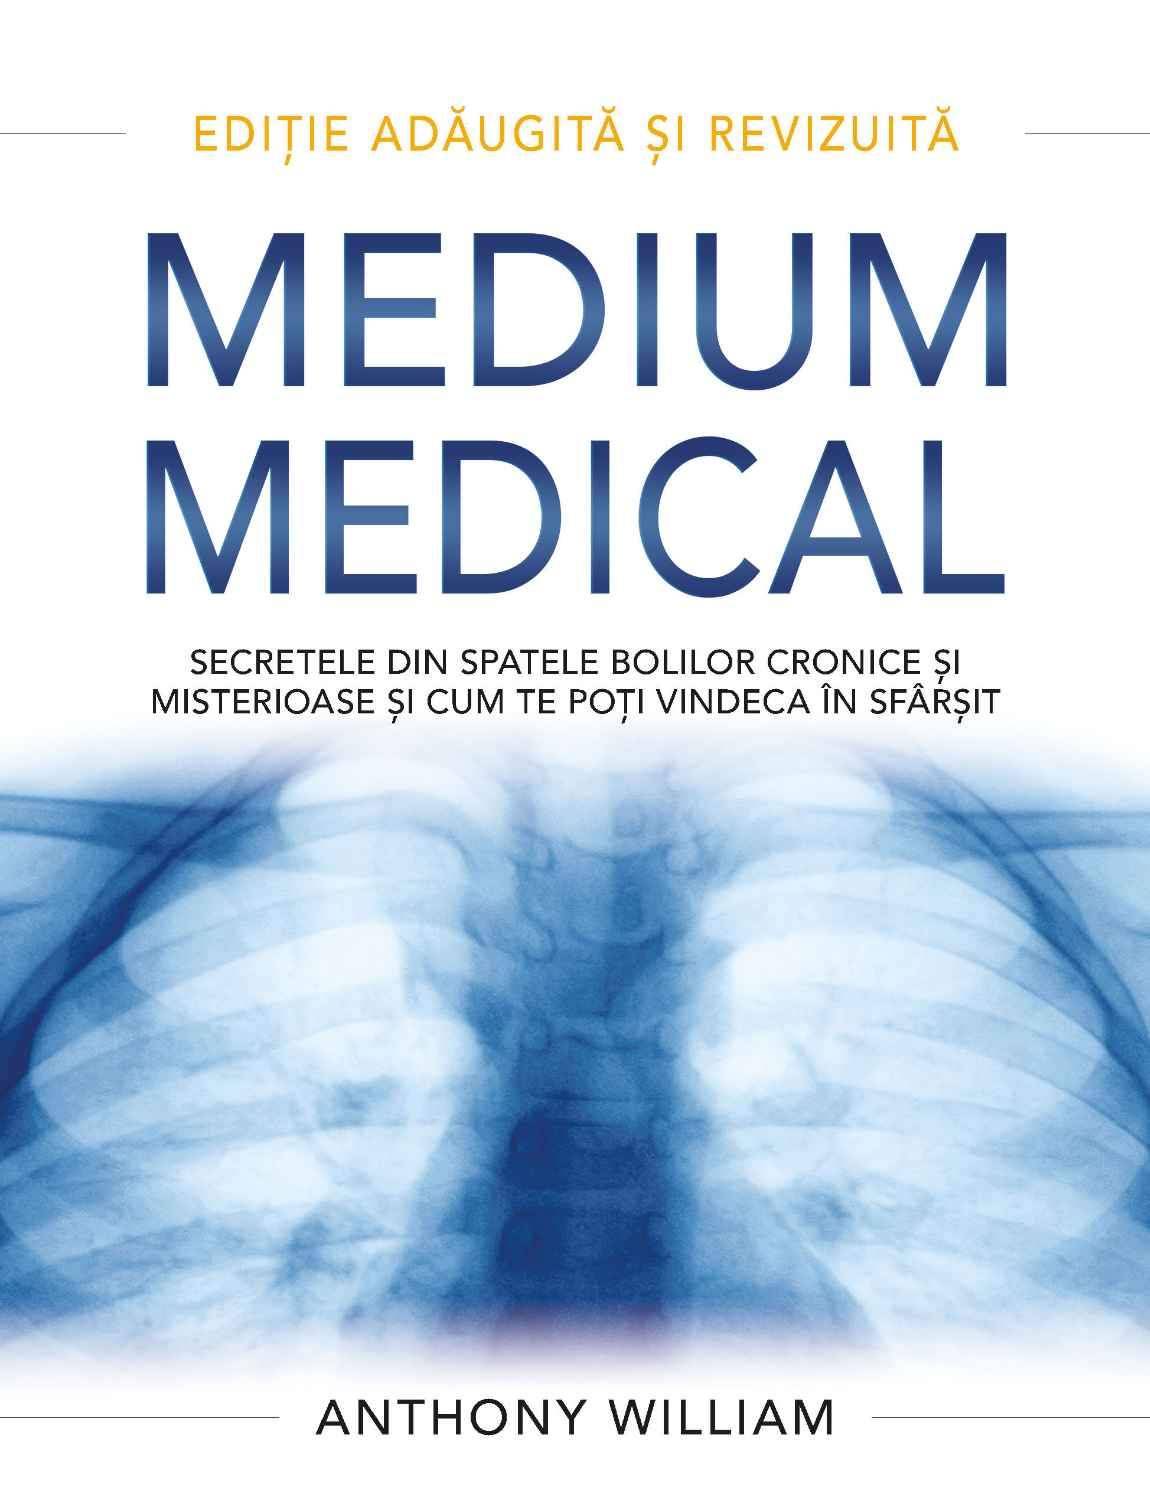 Medium medical - carte - Anthony William